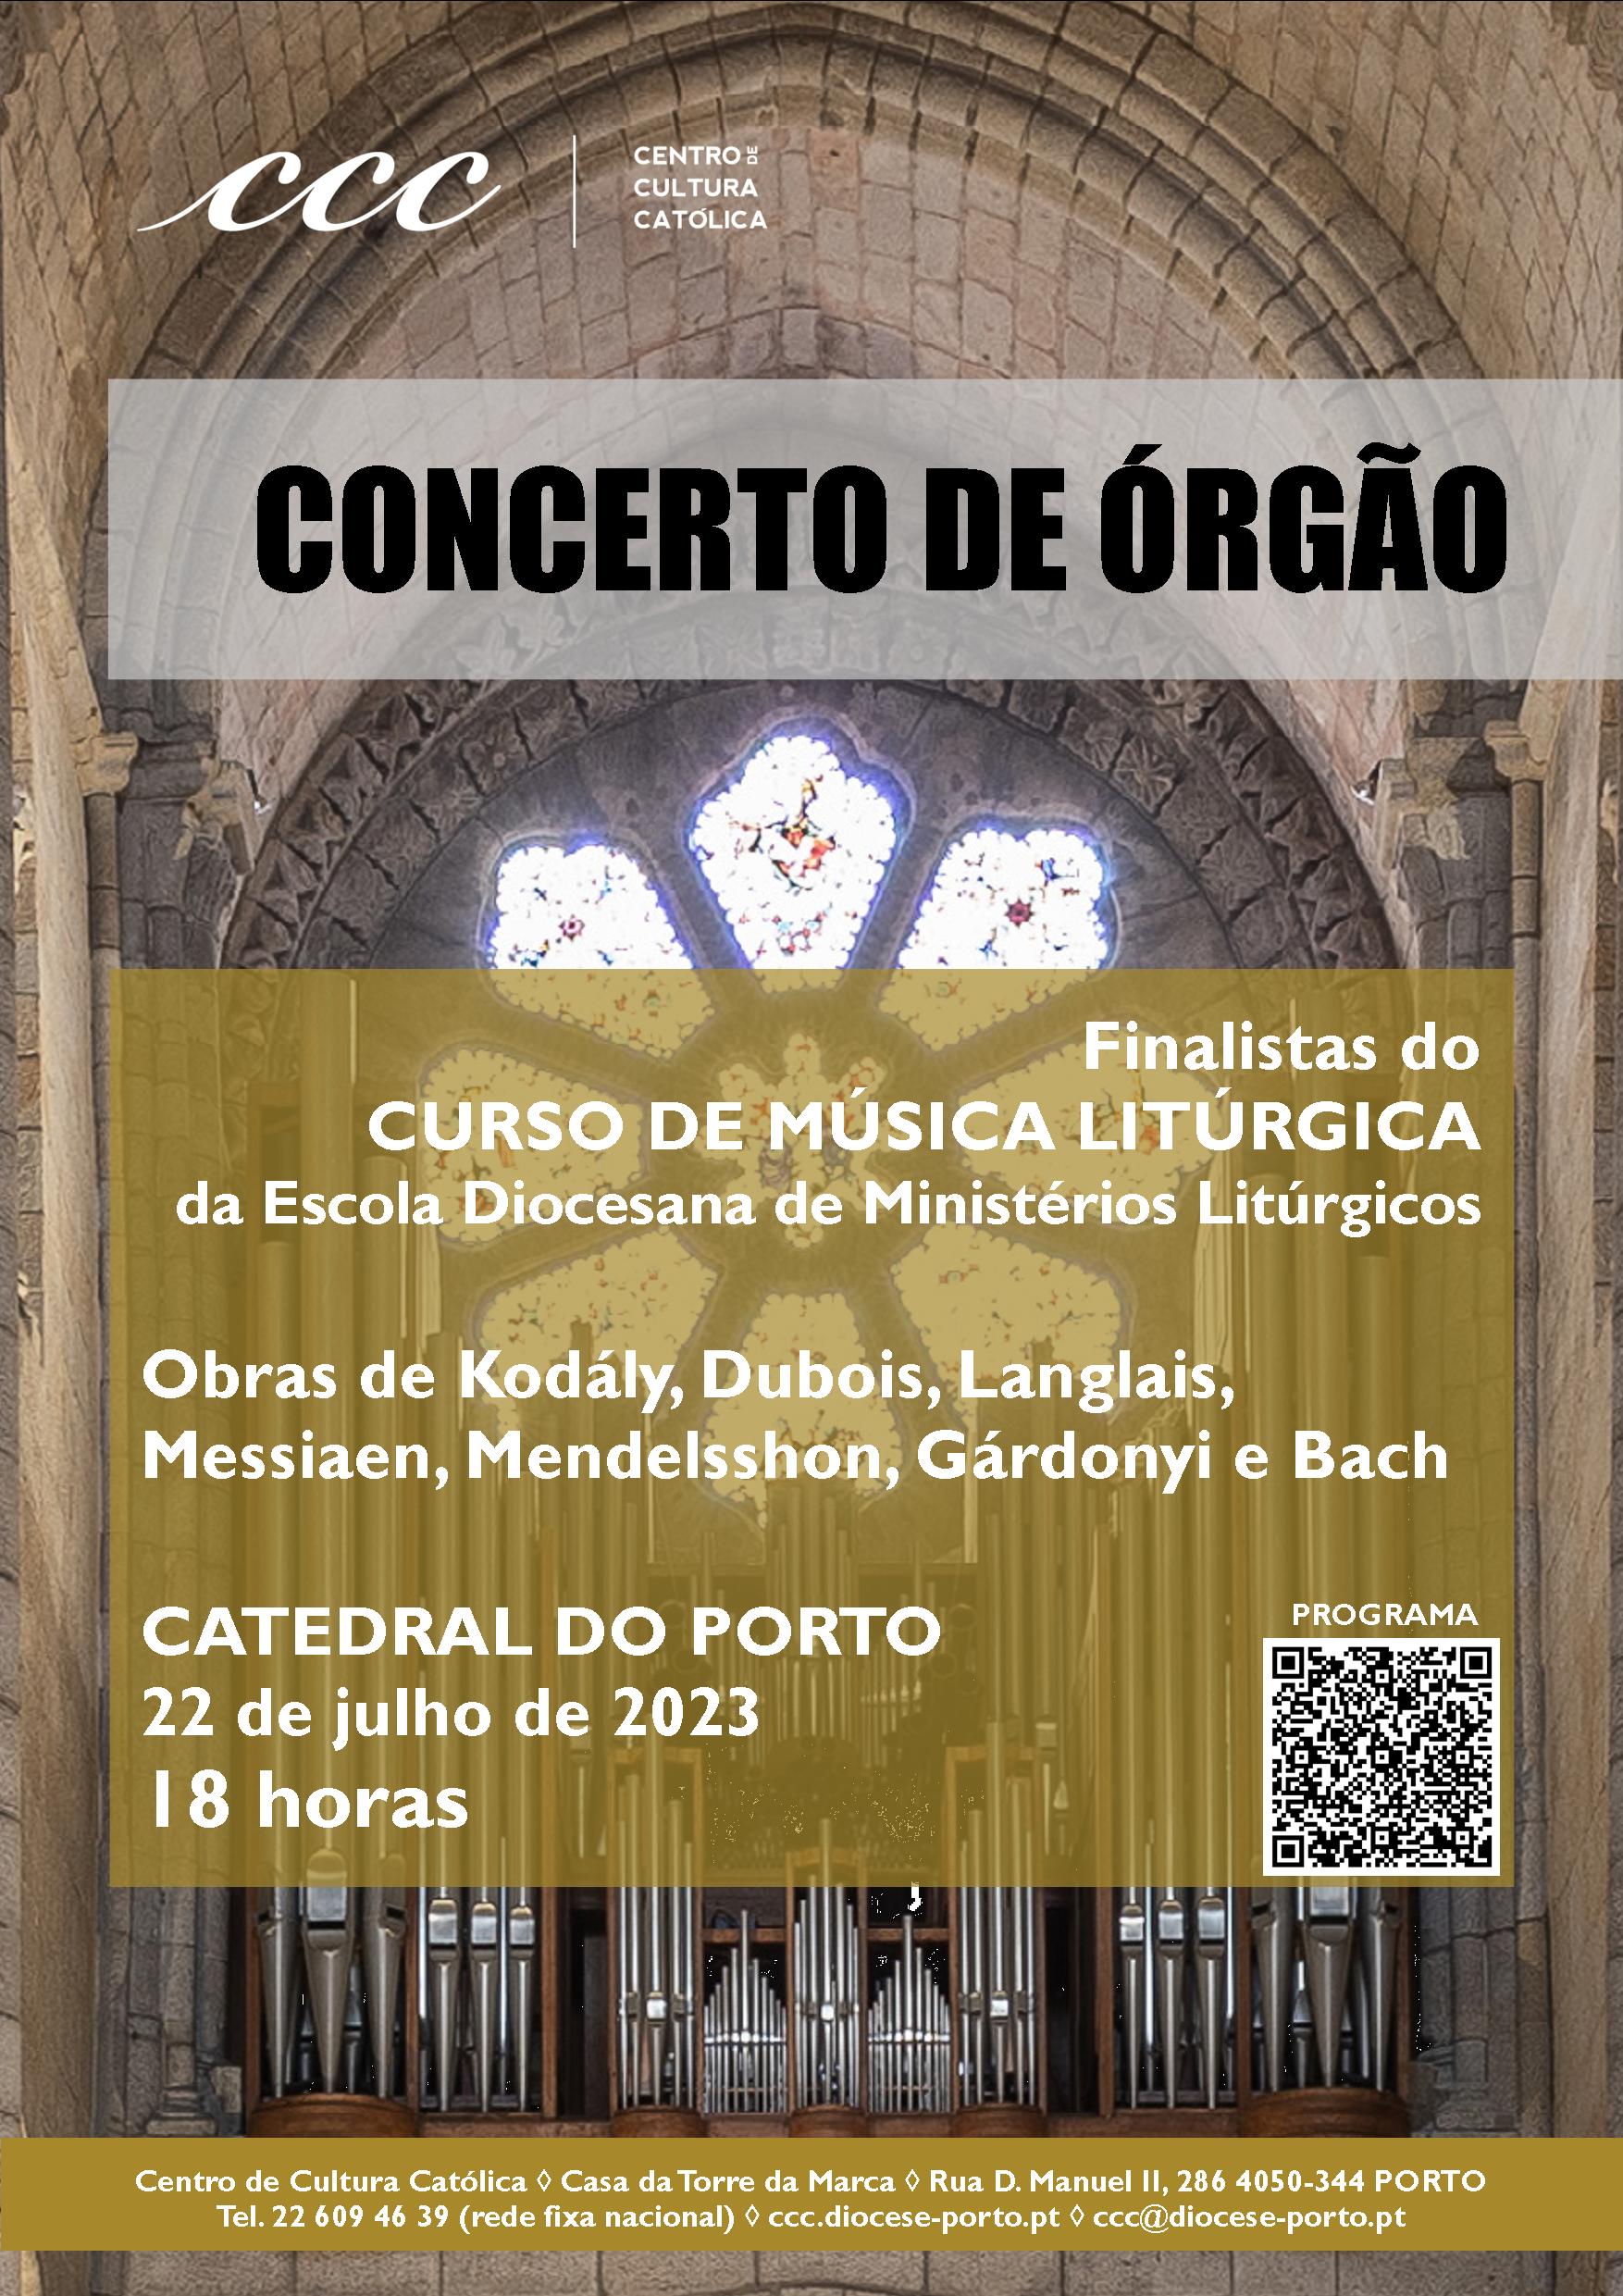 Concerto de Órgão - Catedral do Porto